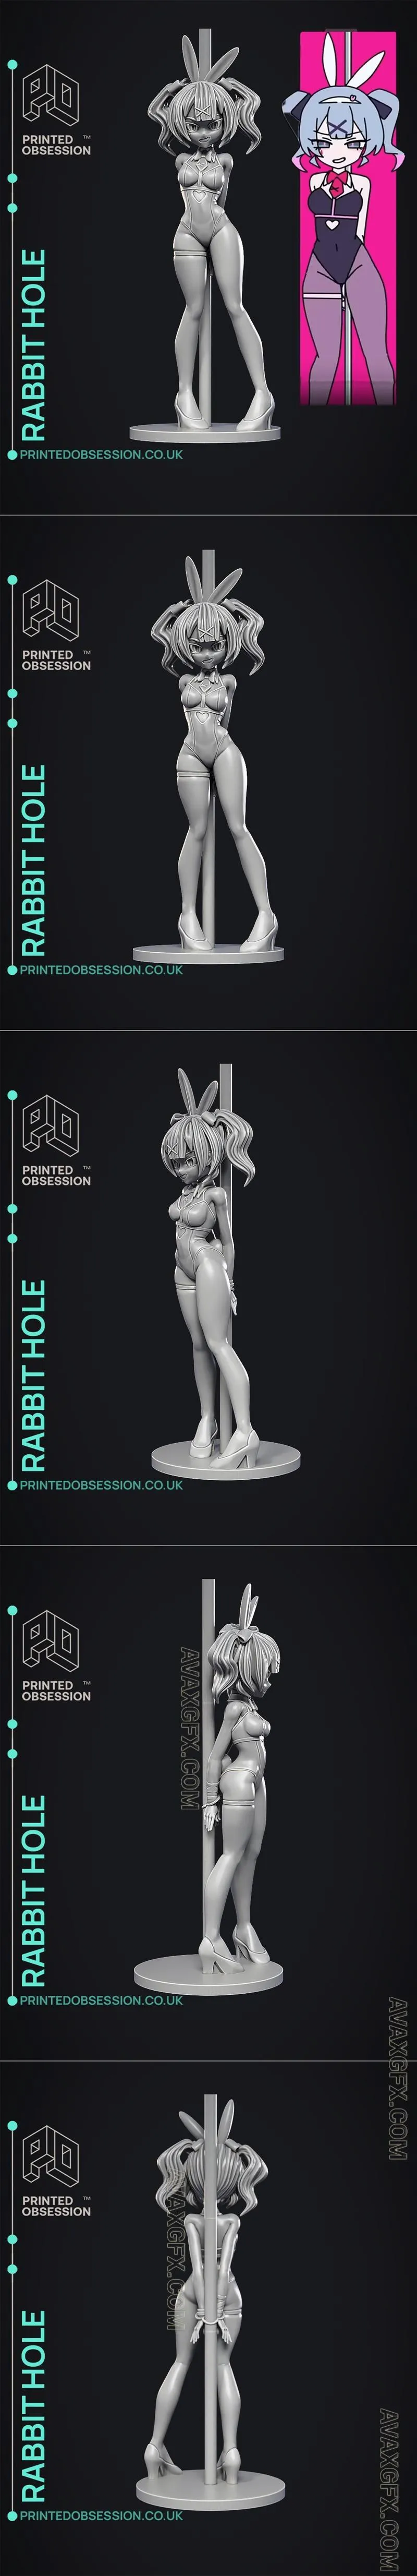 Rabbit Hole - Fan Art - STL 3D Model